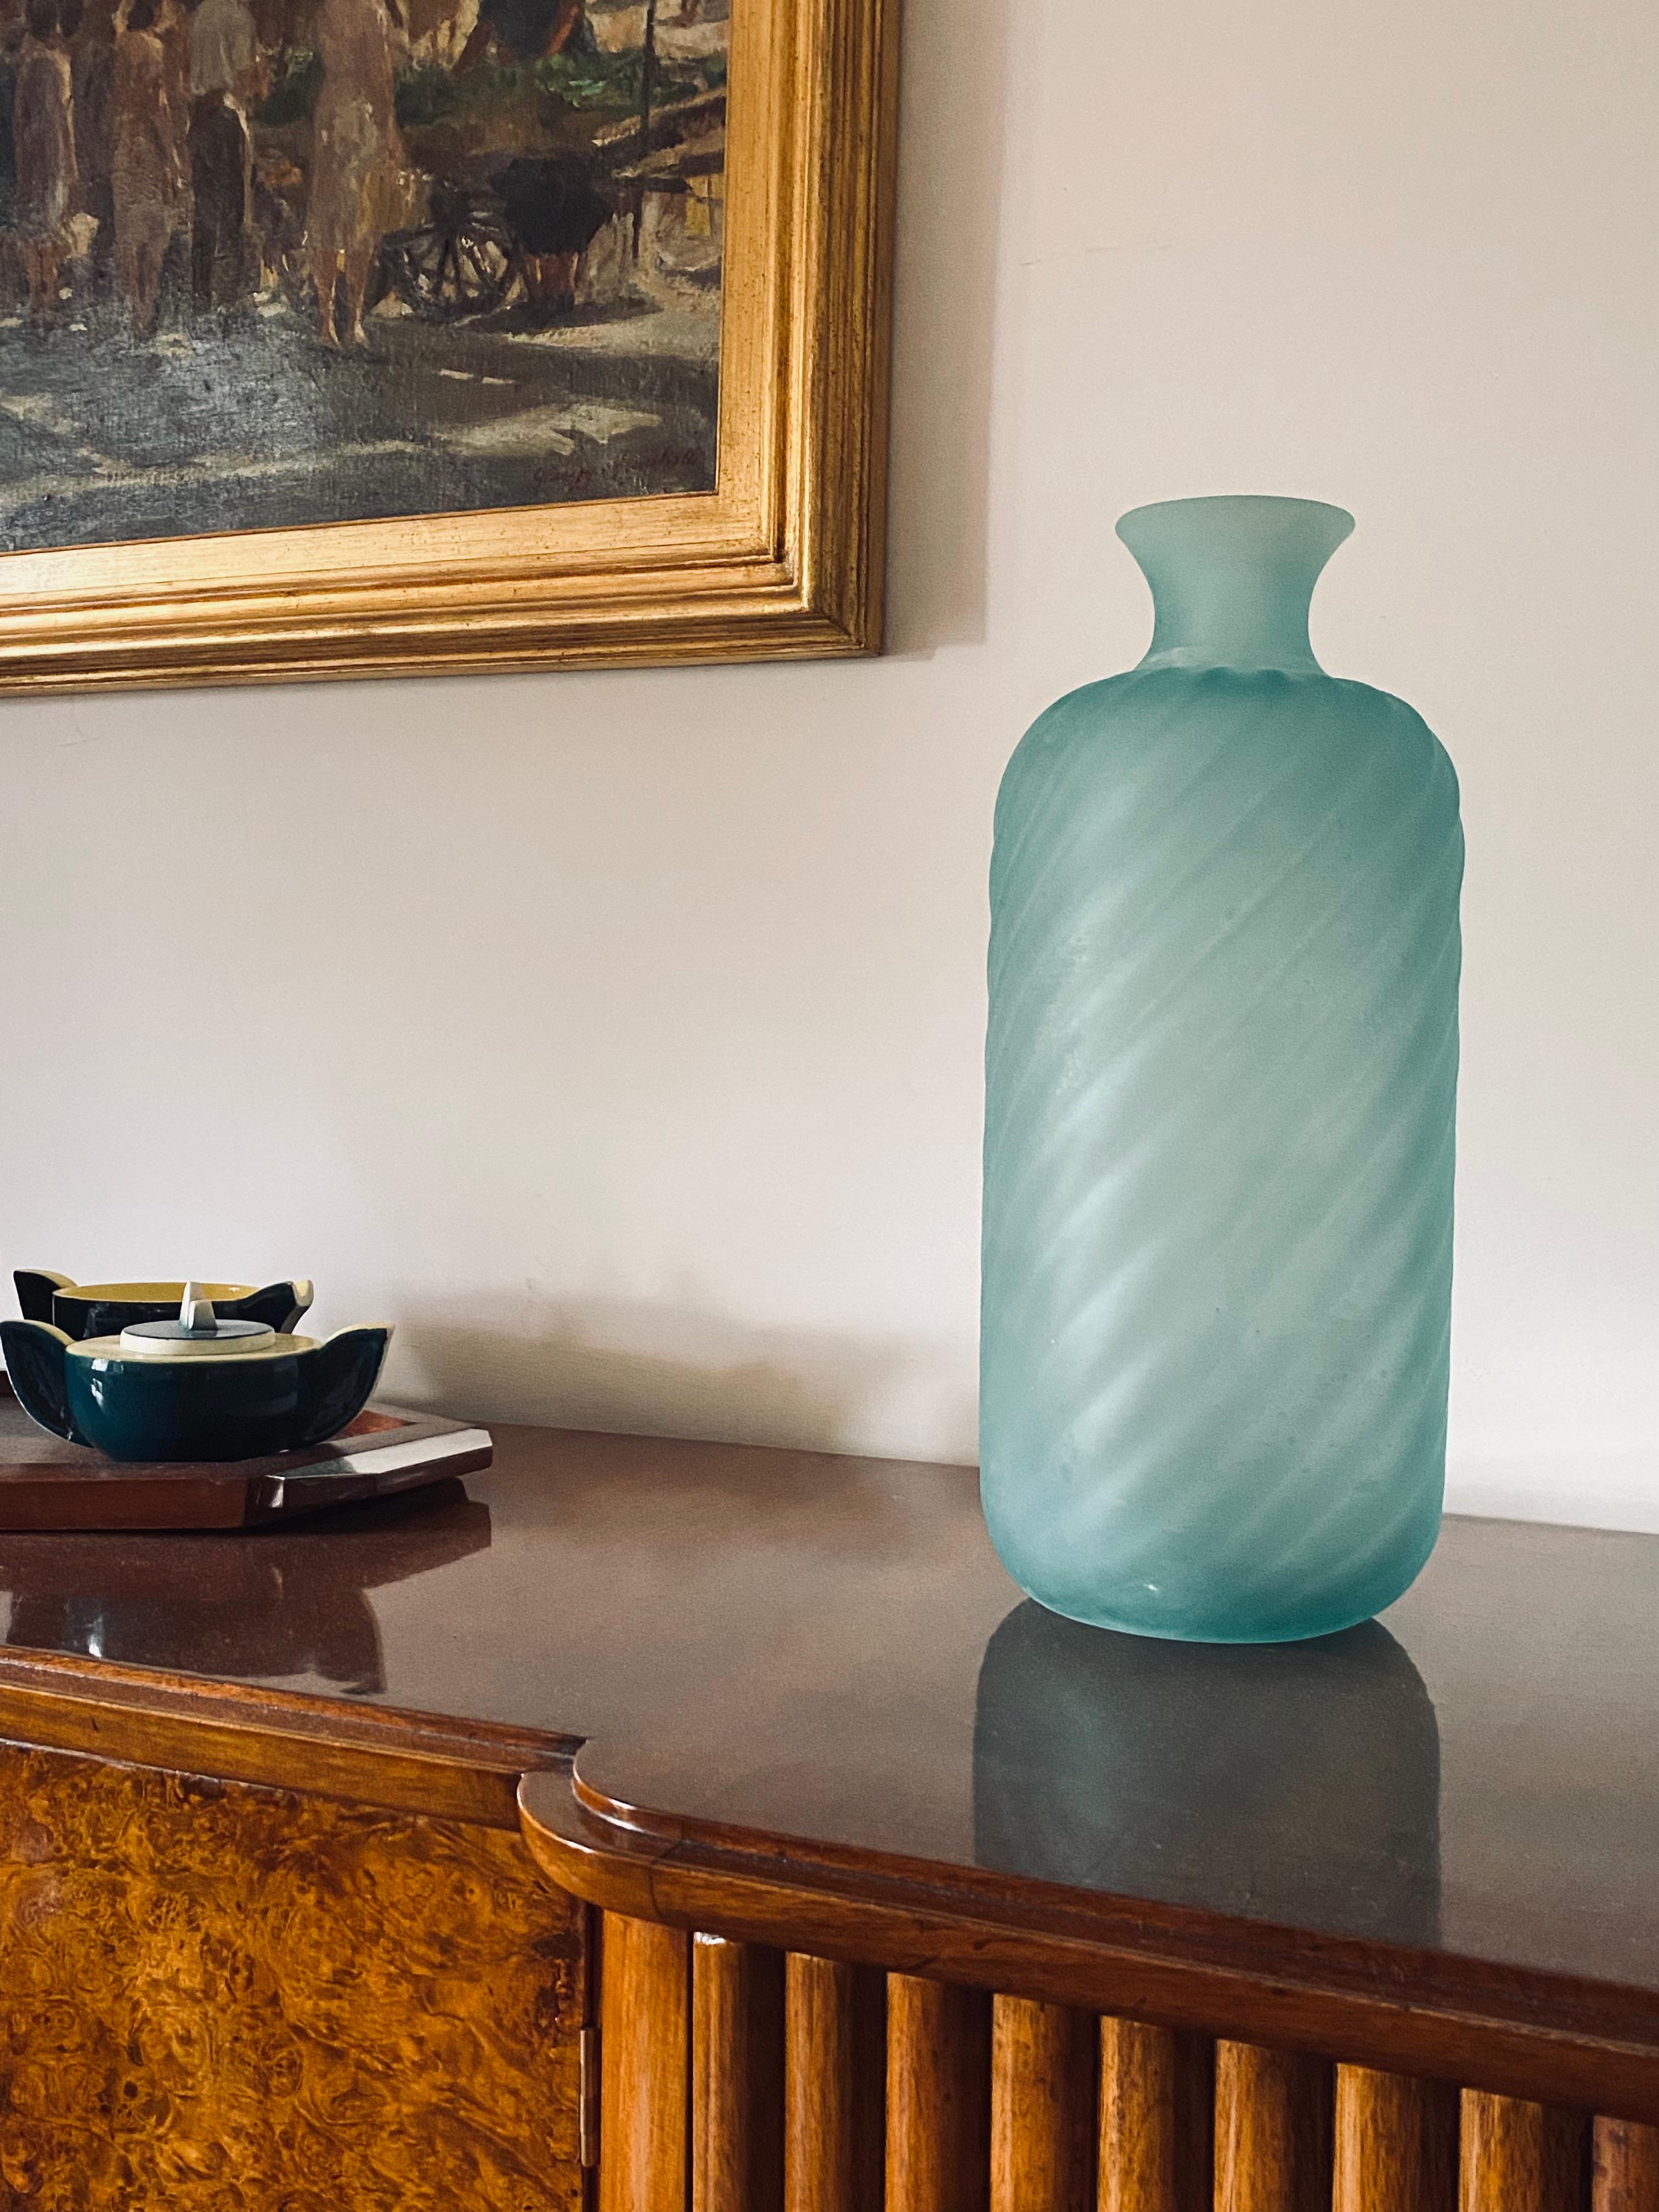 Vase en forme de bouteille en verre dépoli de Murano vert d'eau conçu par Gino Cenedese

Cenedese, Murano Italie. 1970 circa

Verre vert givré avec des rudentations en spirale à l'extérieur.

Signature gravée sous la base.

Label 